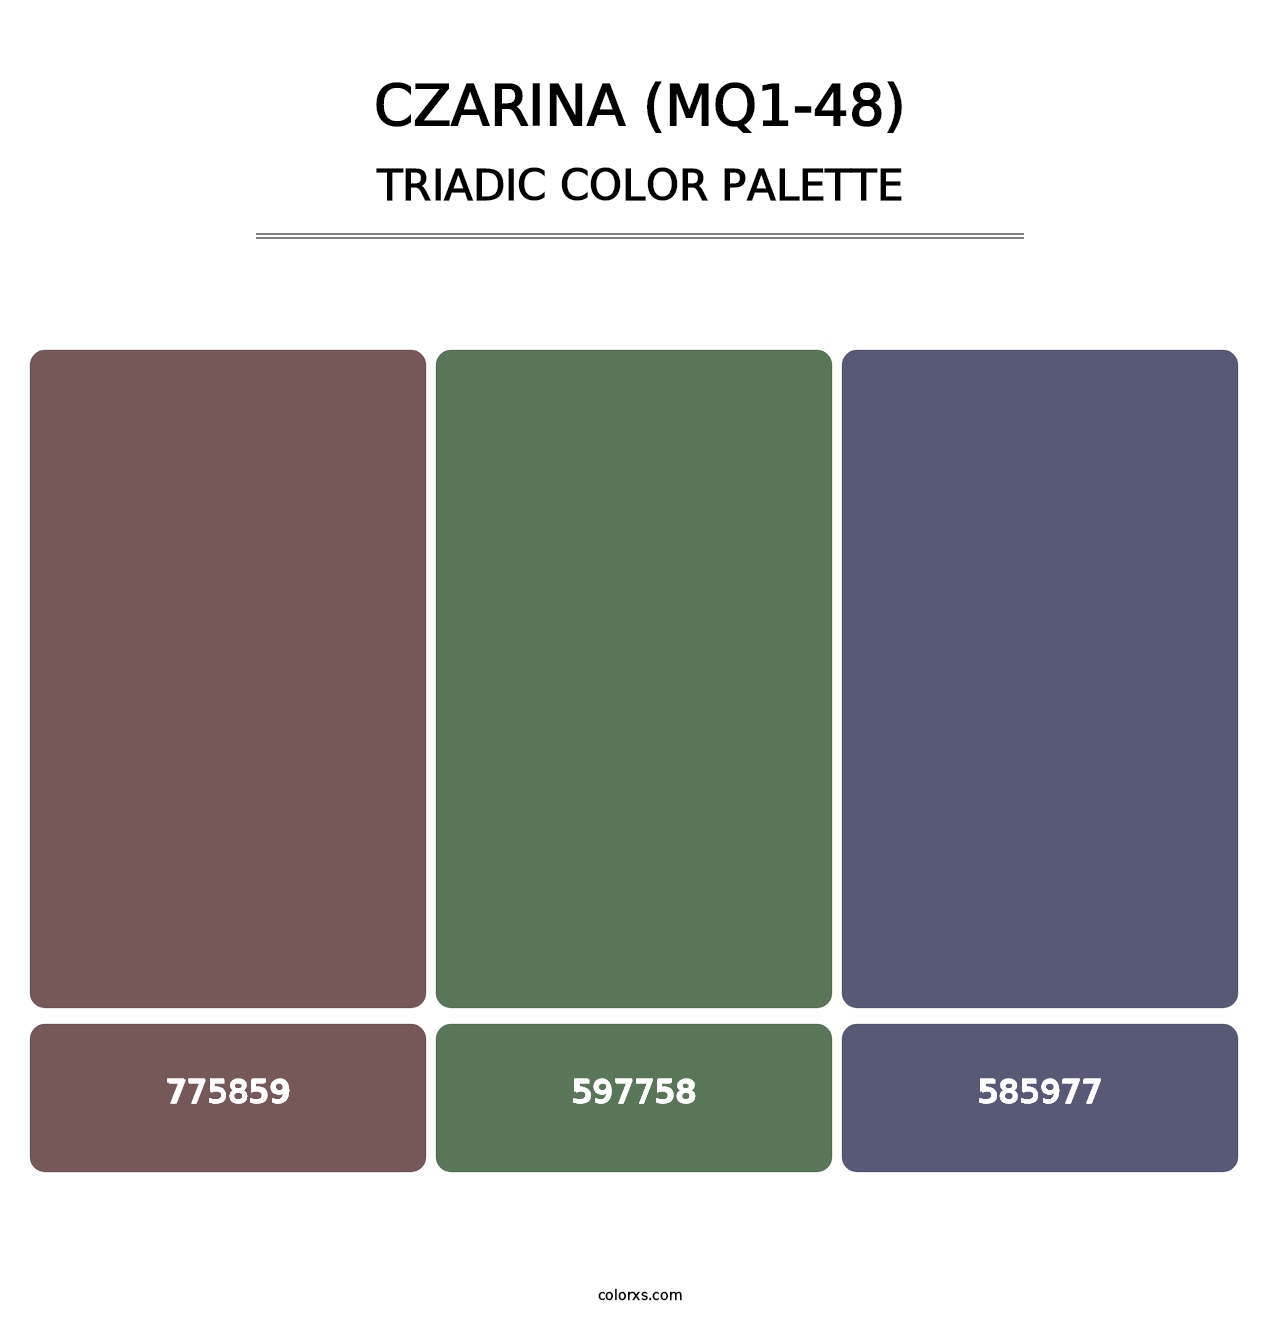 Czarina (MQ1-48) - Triadic Color Palette